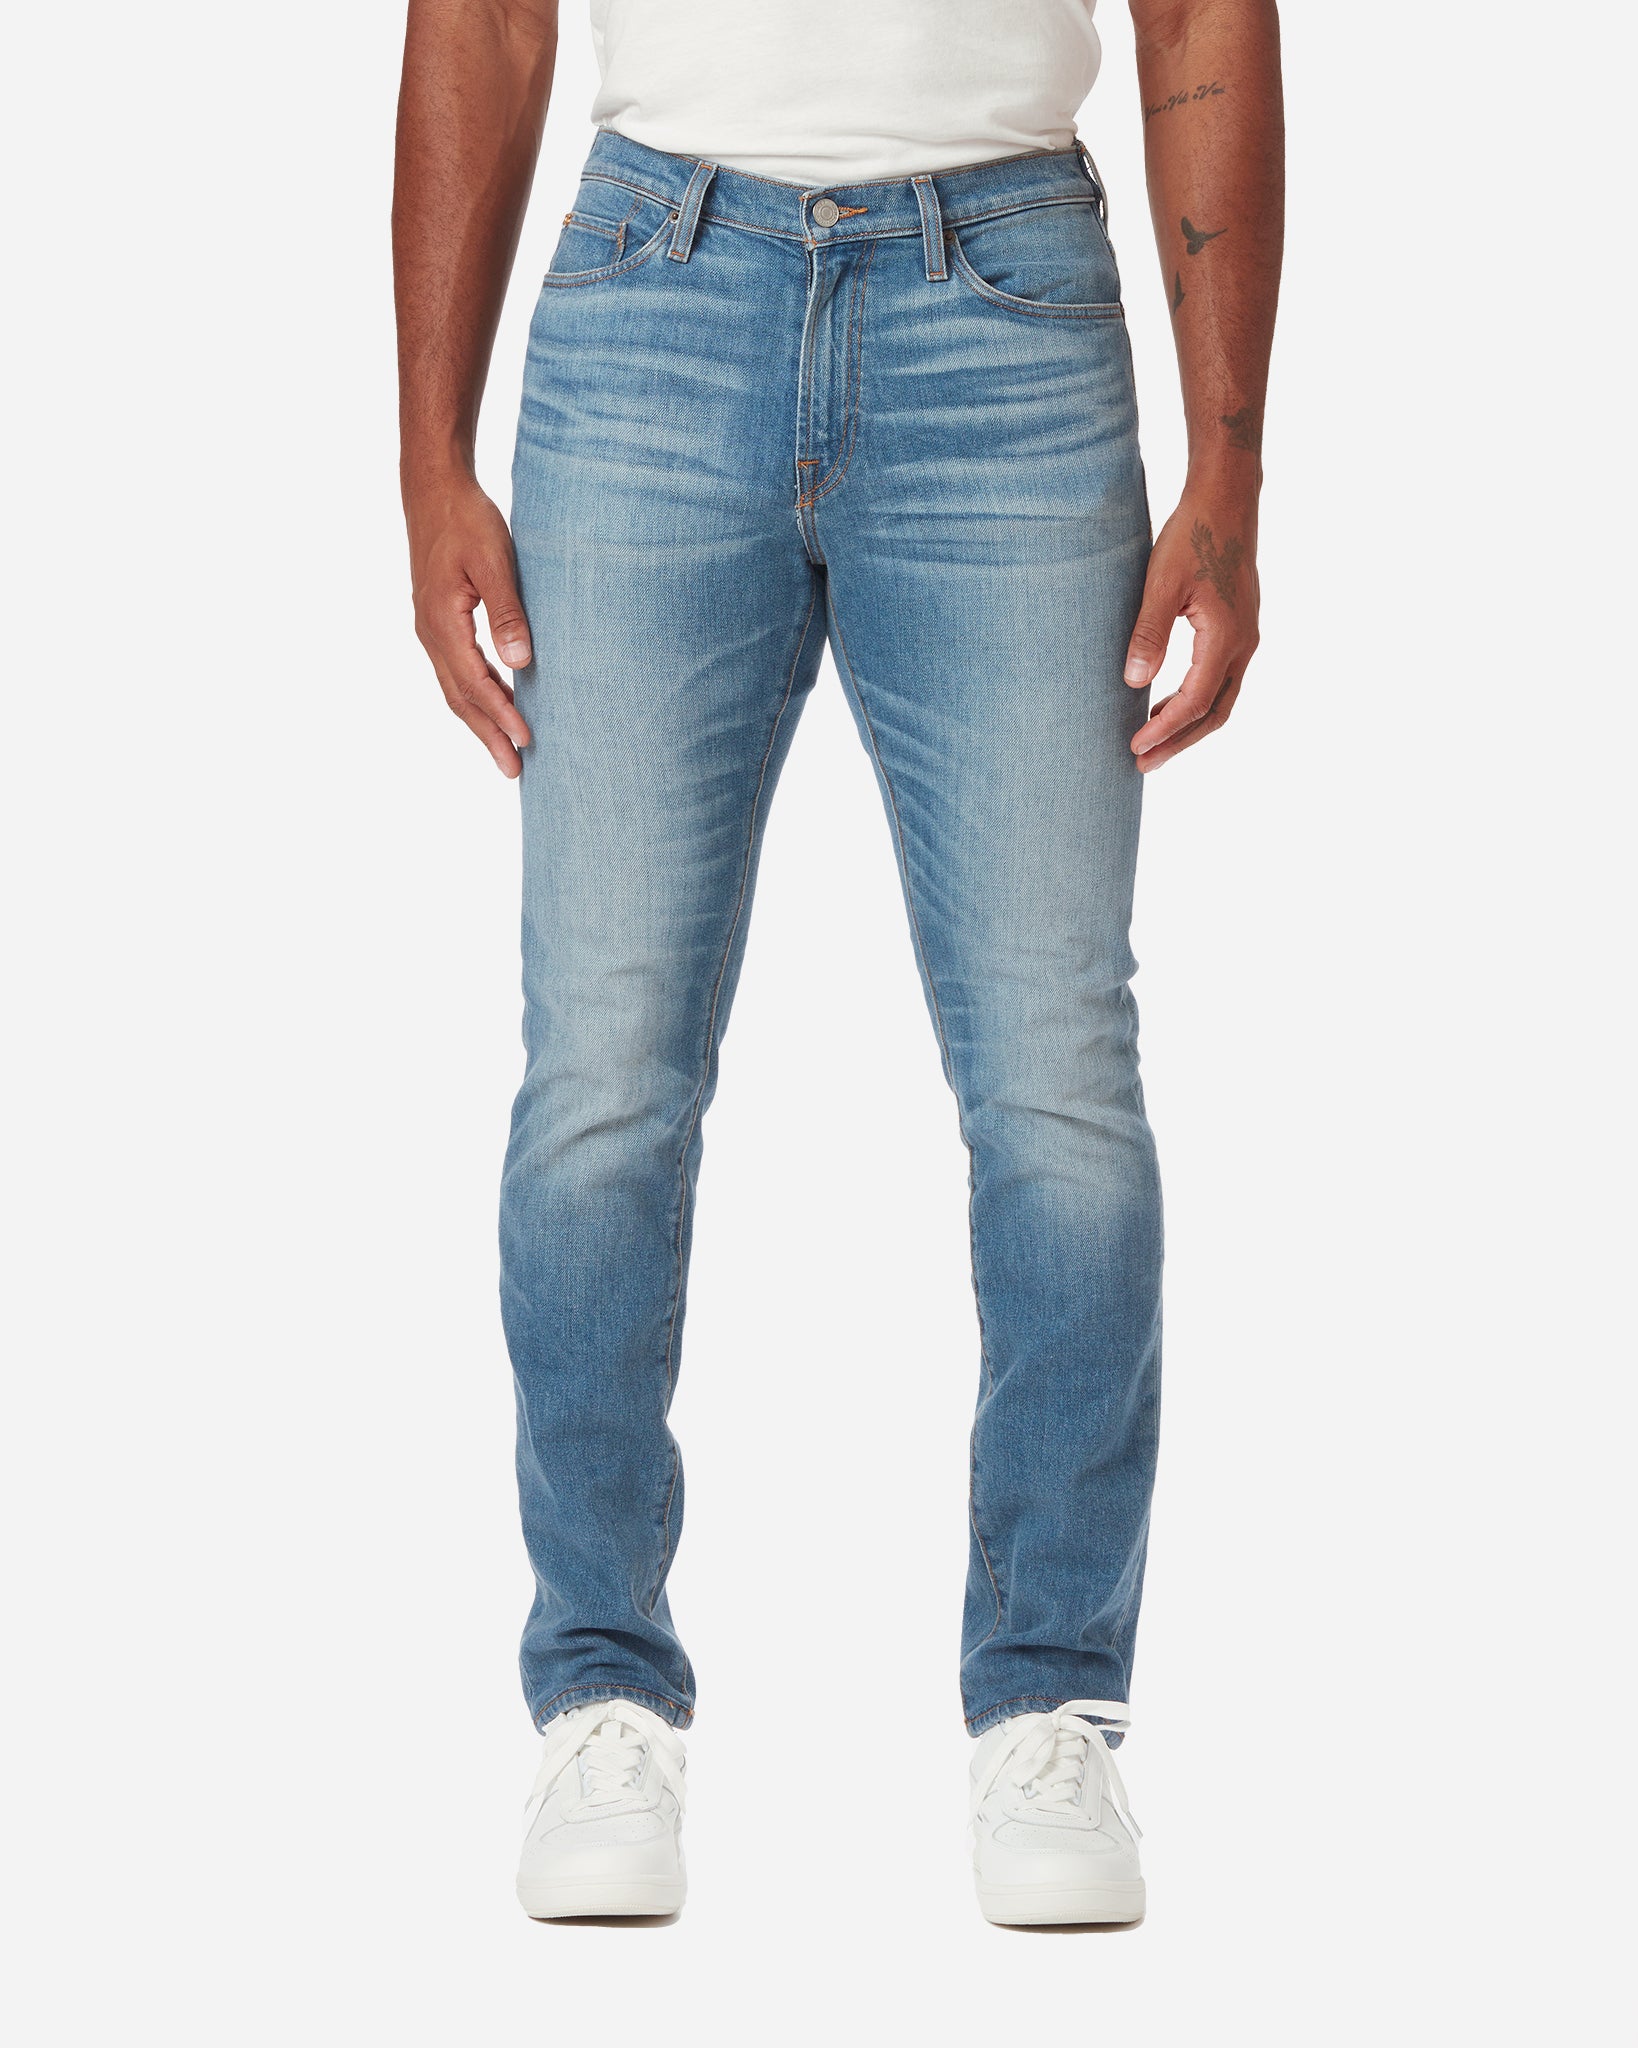 Men's Athletic Jeans - Medium Vintage Wash – Ace Rivington